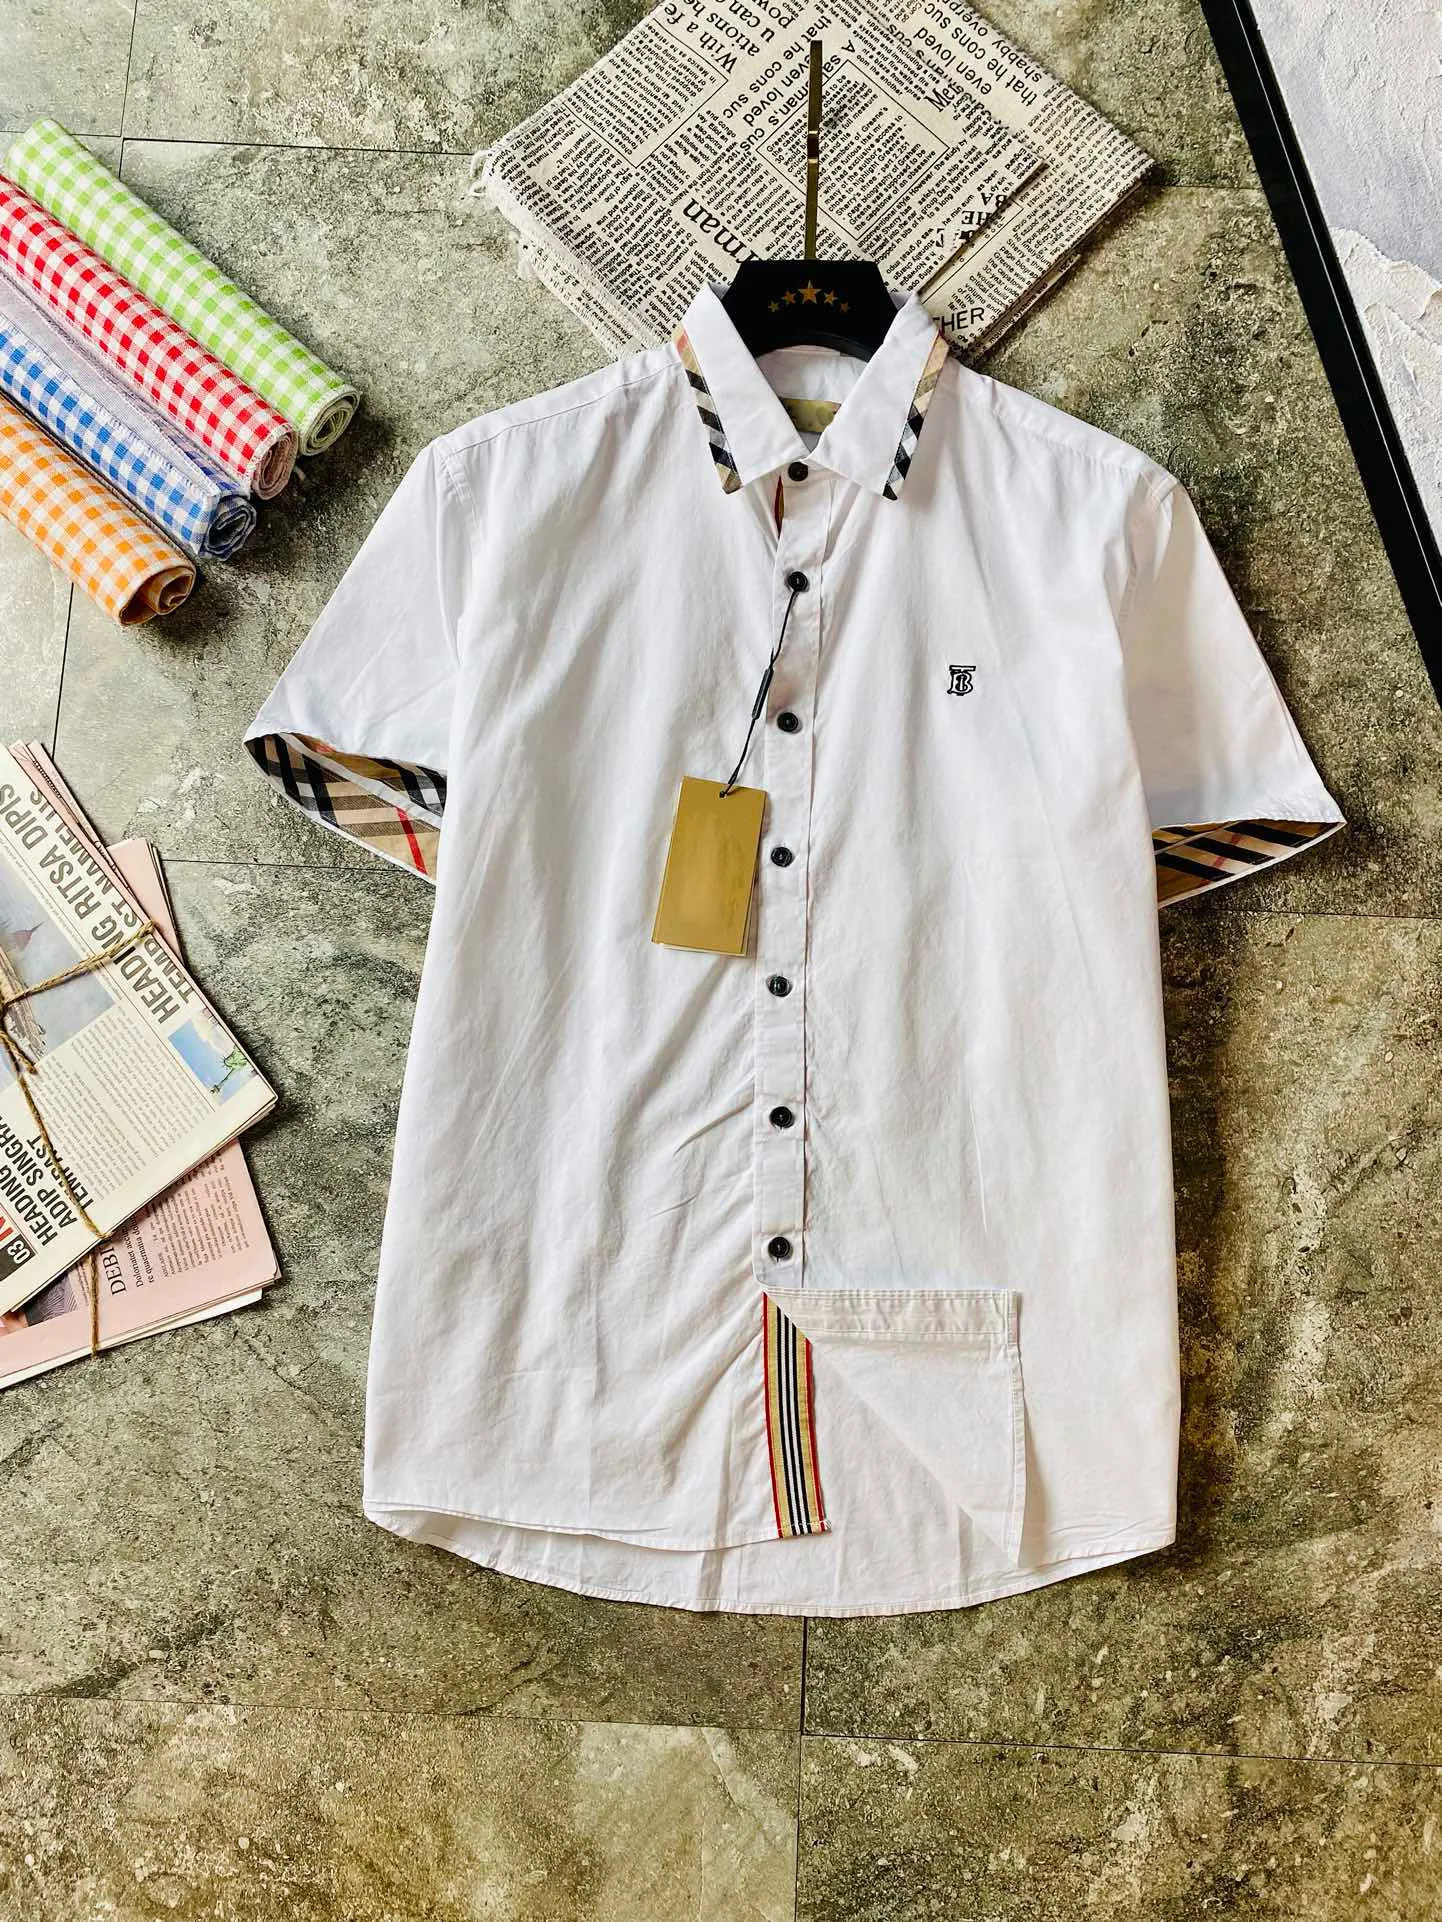 남성 패션 플라워 호랑이 인쇄 셔츠 캐주얼 버튼 아래로 짧은 슬리브 하와이 셔츠 정장 여름 해변 디자이너 드레스 셔츠 A33